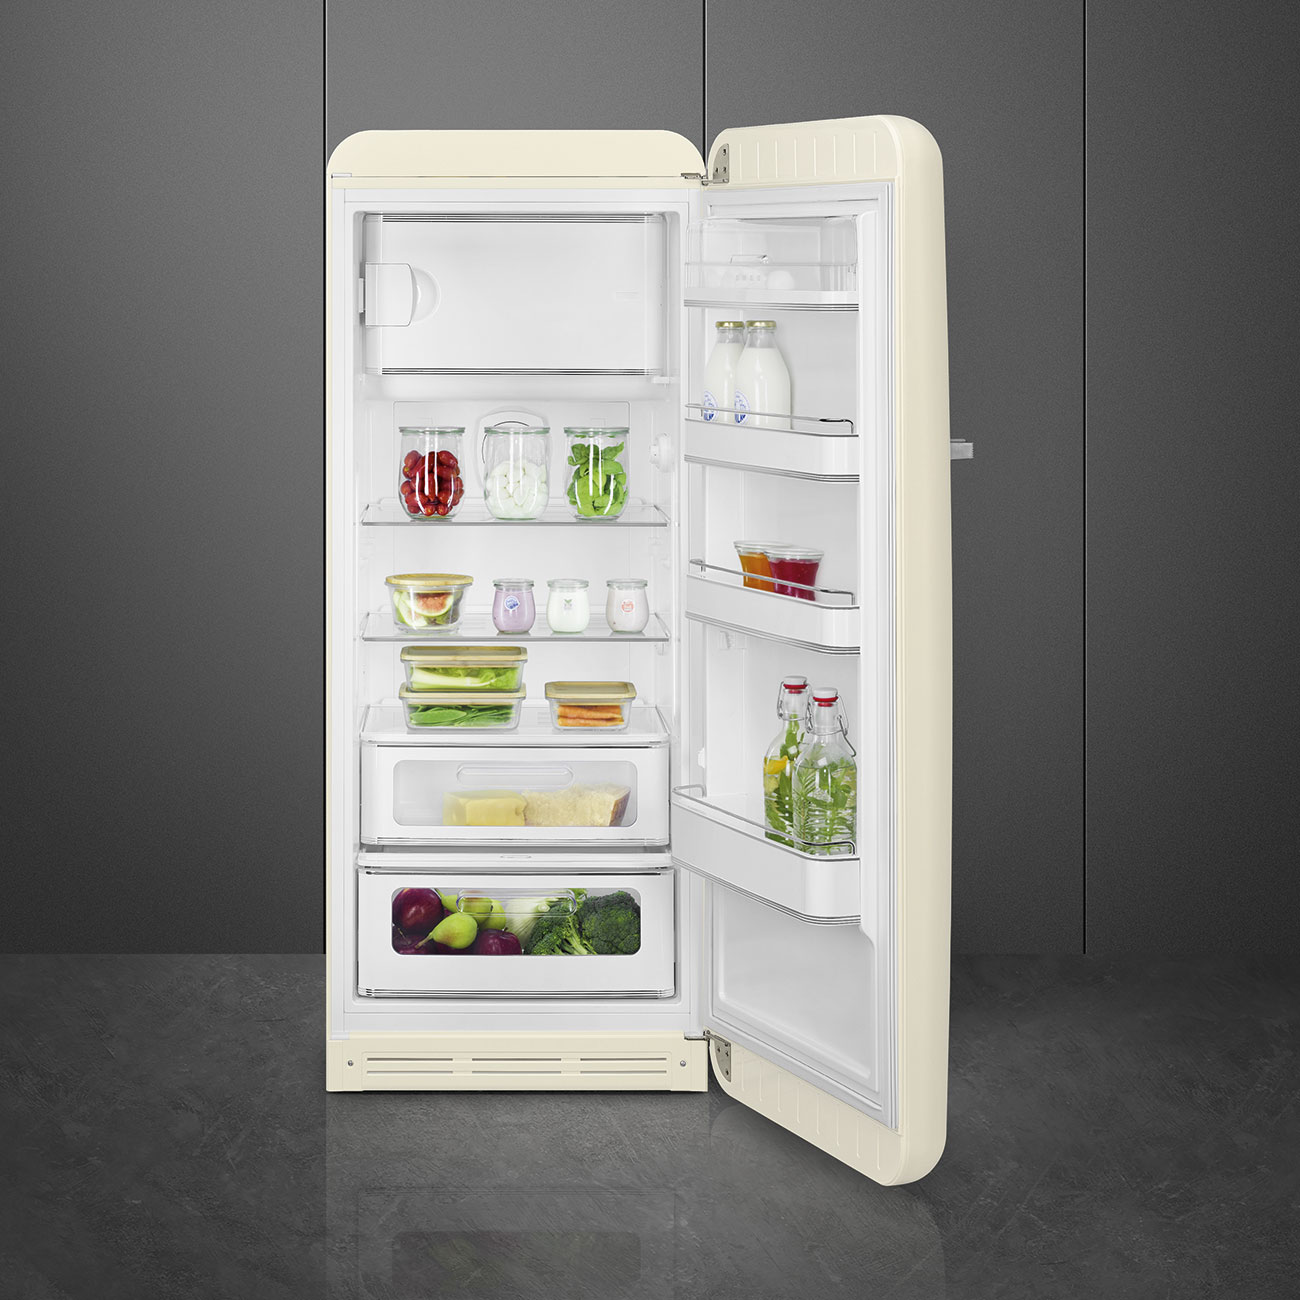 Cream refrigerator - Smeg_10